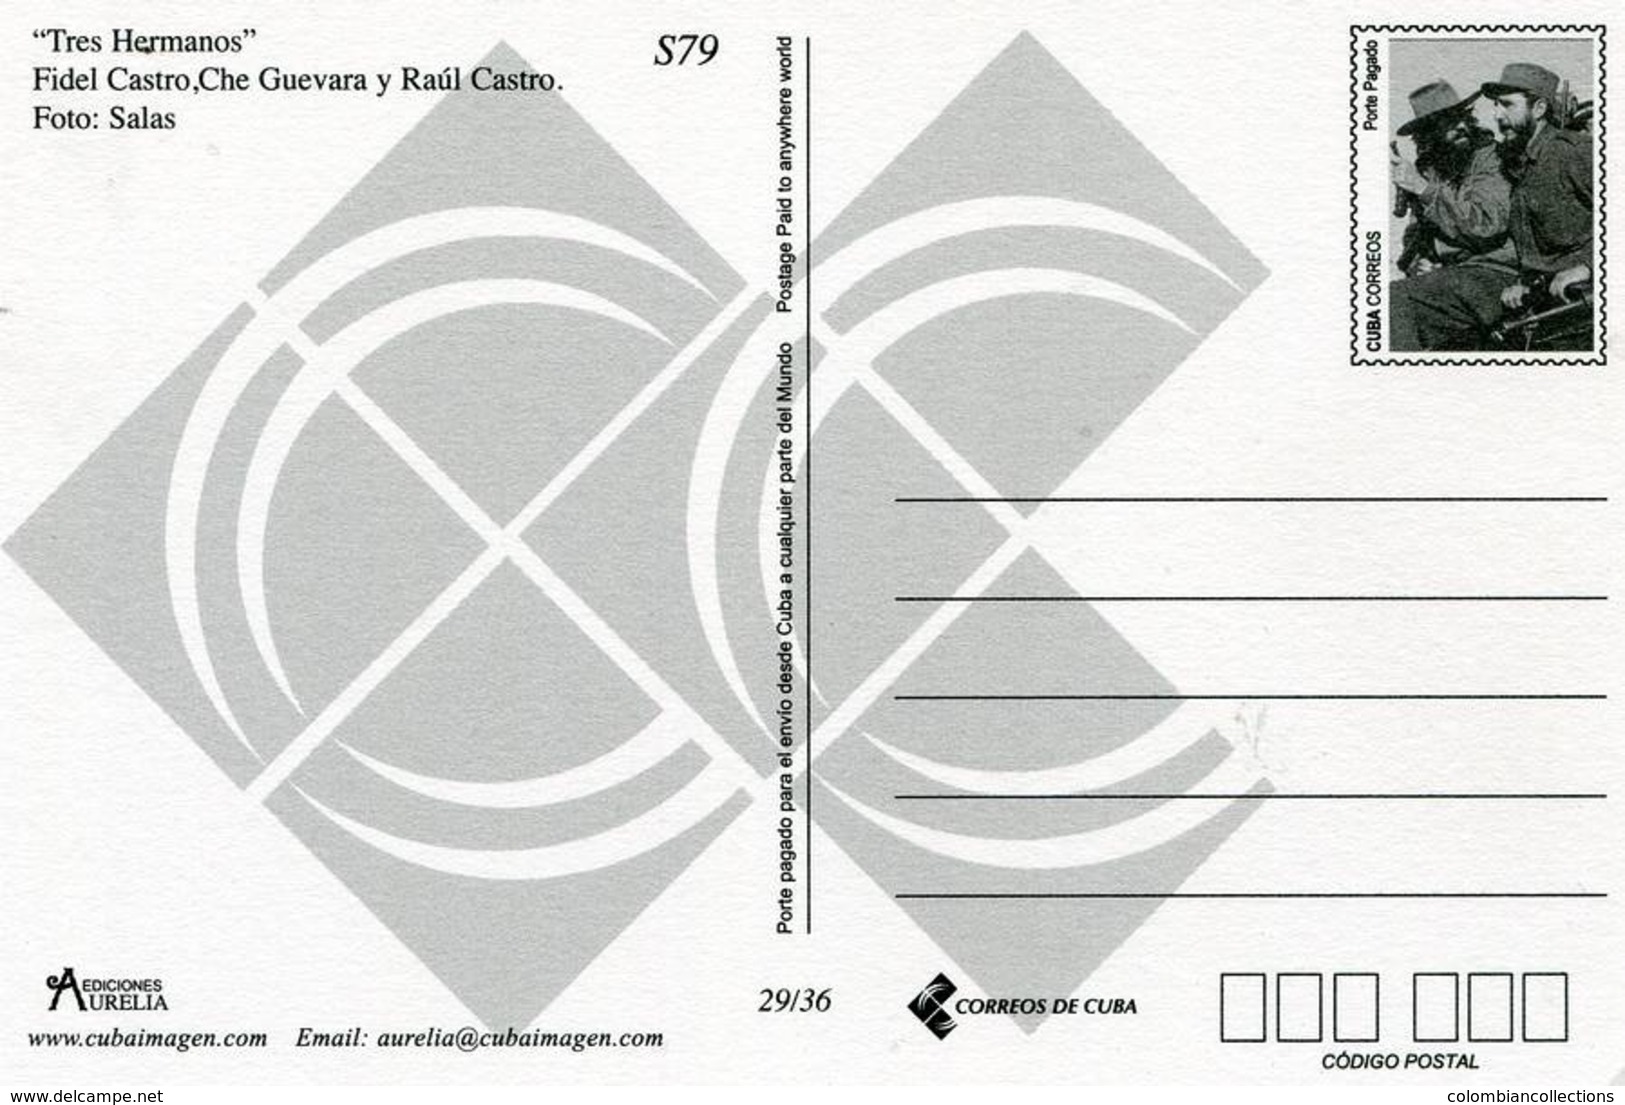 Lote PEP1298, Cuba, Entero Postal, Postcard, Stationery, 2013, Ediciones Aurelia, 29/36, Fidel, Che Y Raul - Tarjetas – Máxima